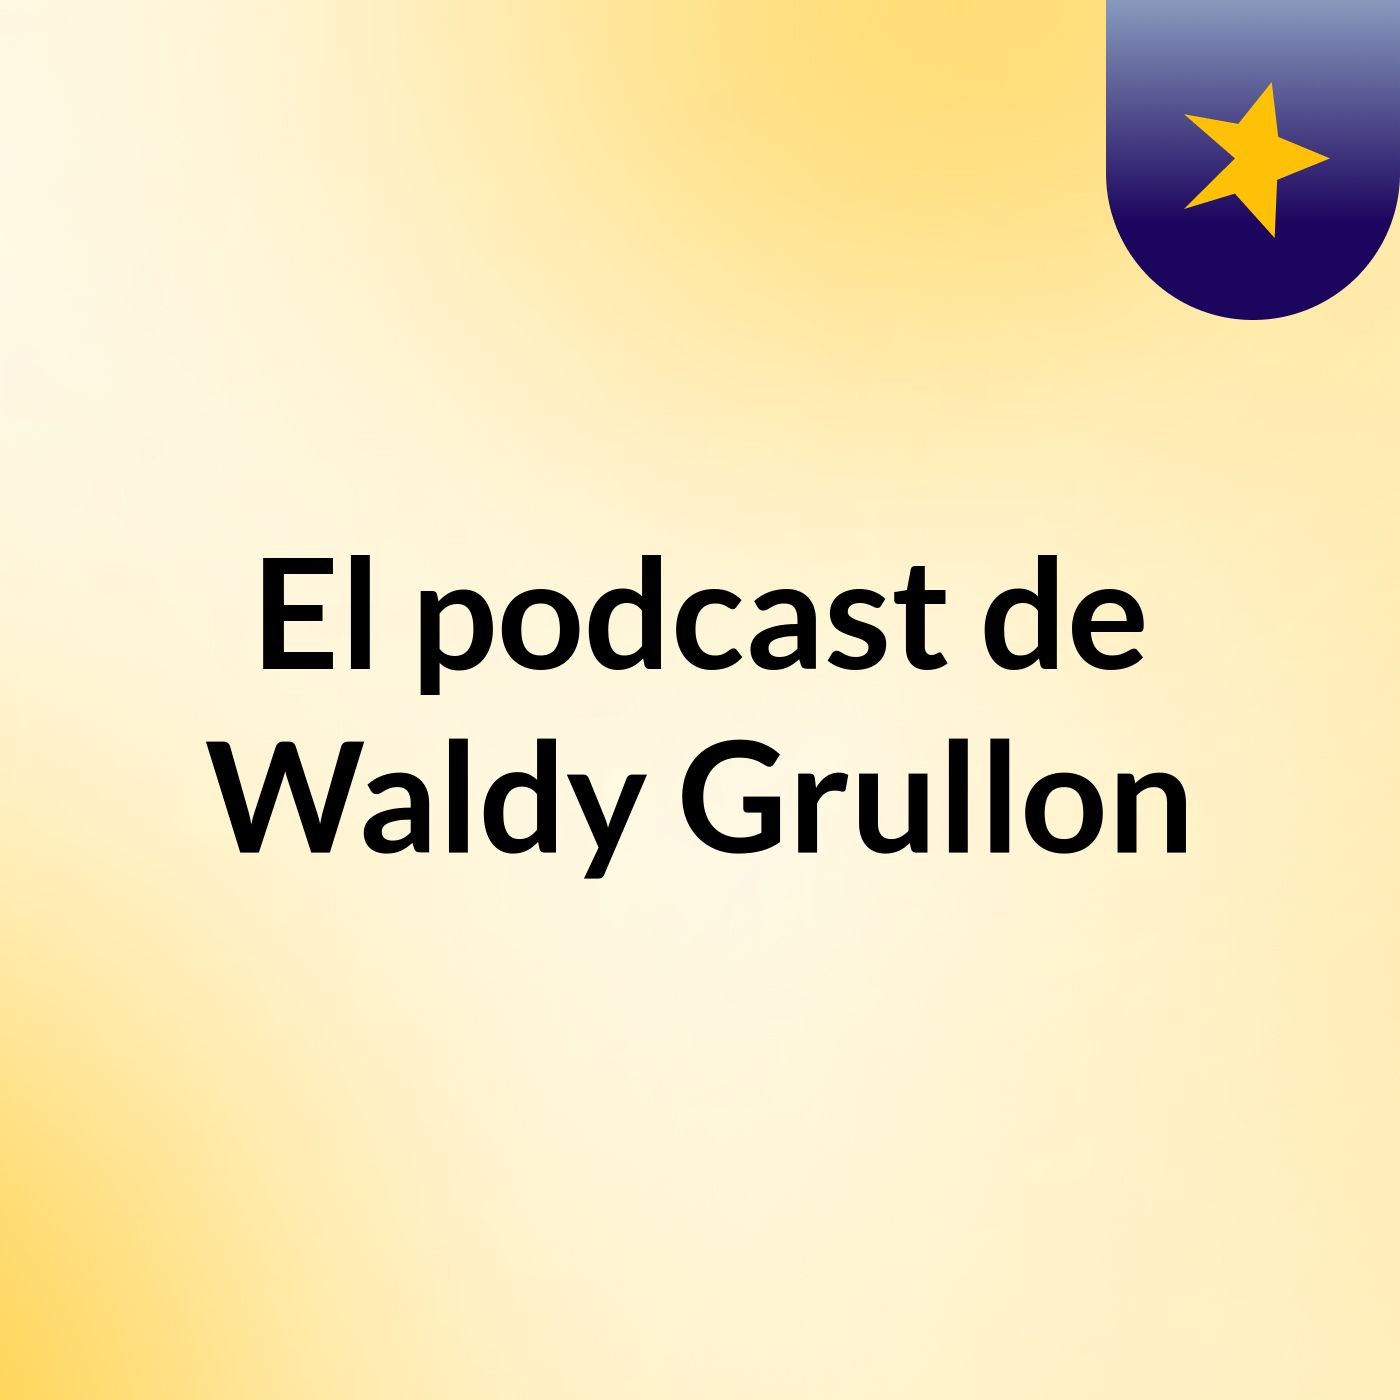 El podcast de Waldy Grullon